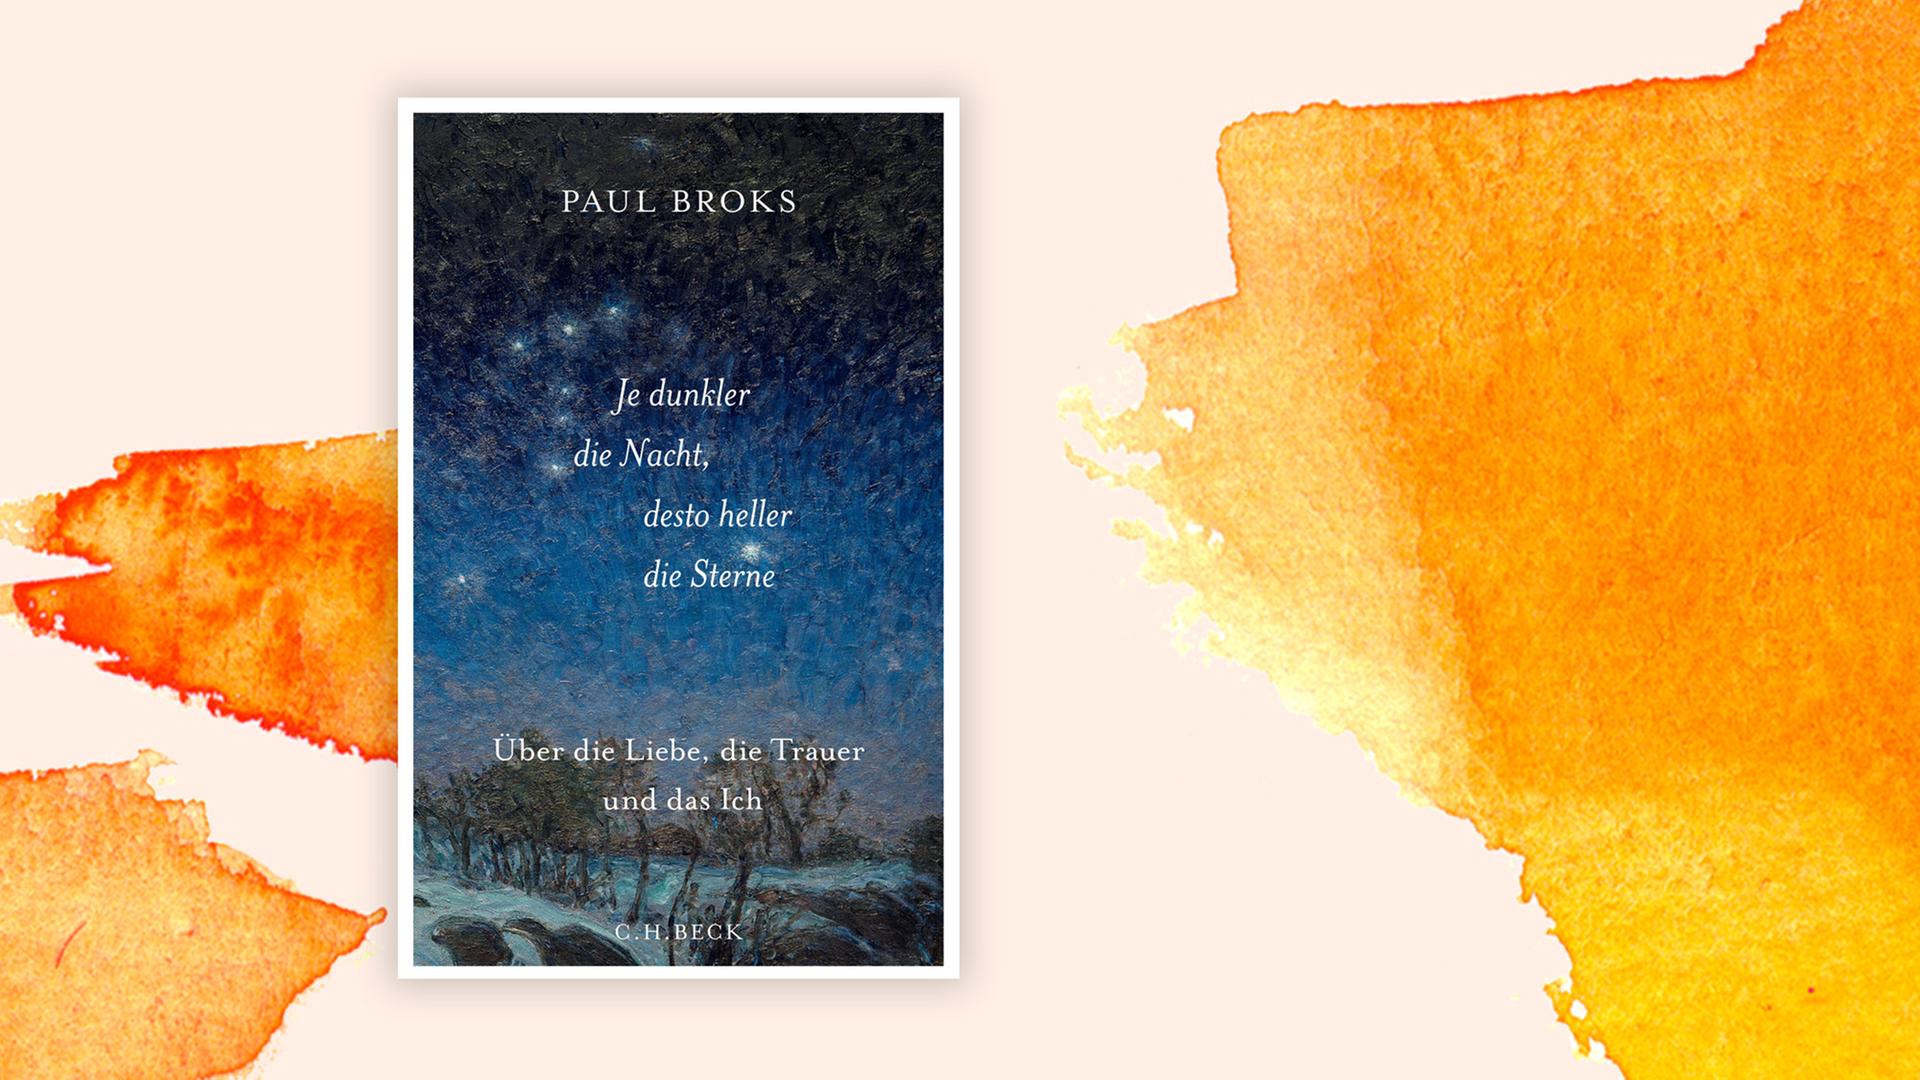 Das Cover des Buches von Paul Broks, "Je dunkler die Nacht, desto heller die Sterne", zeigt eine Winterlandschaft, der nächtliche Himmel ist blau, die Sterne funkeln.